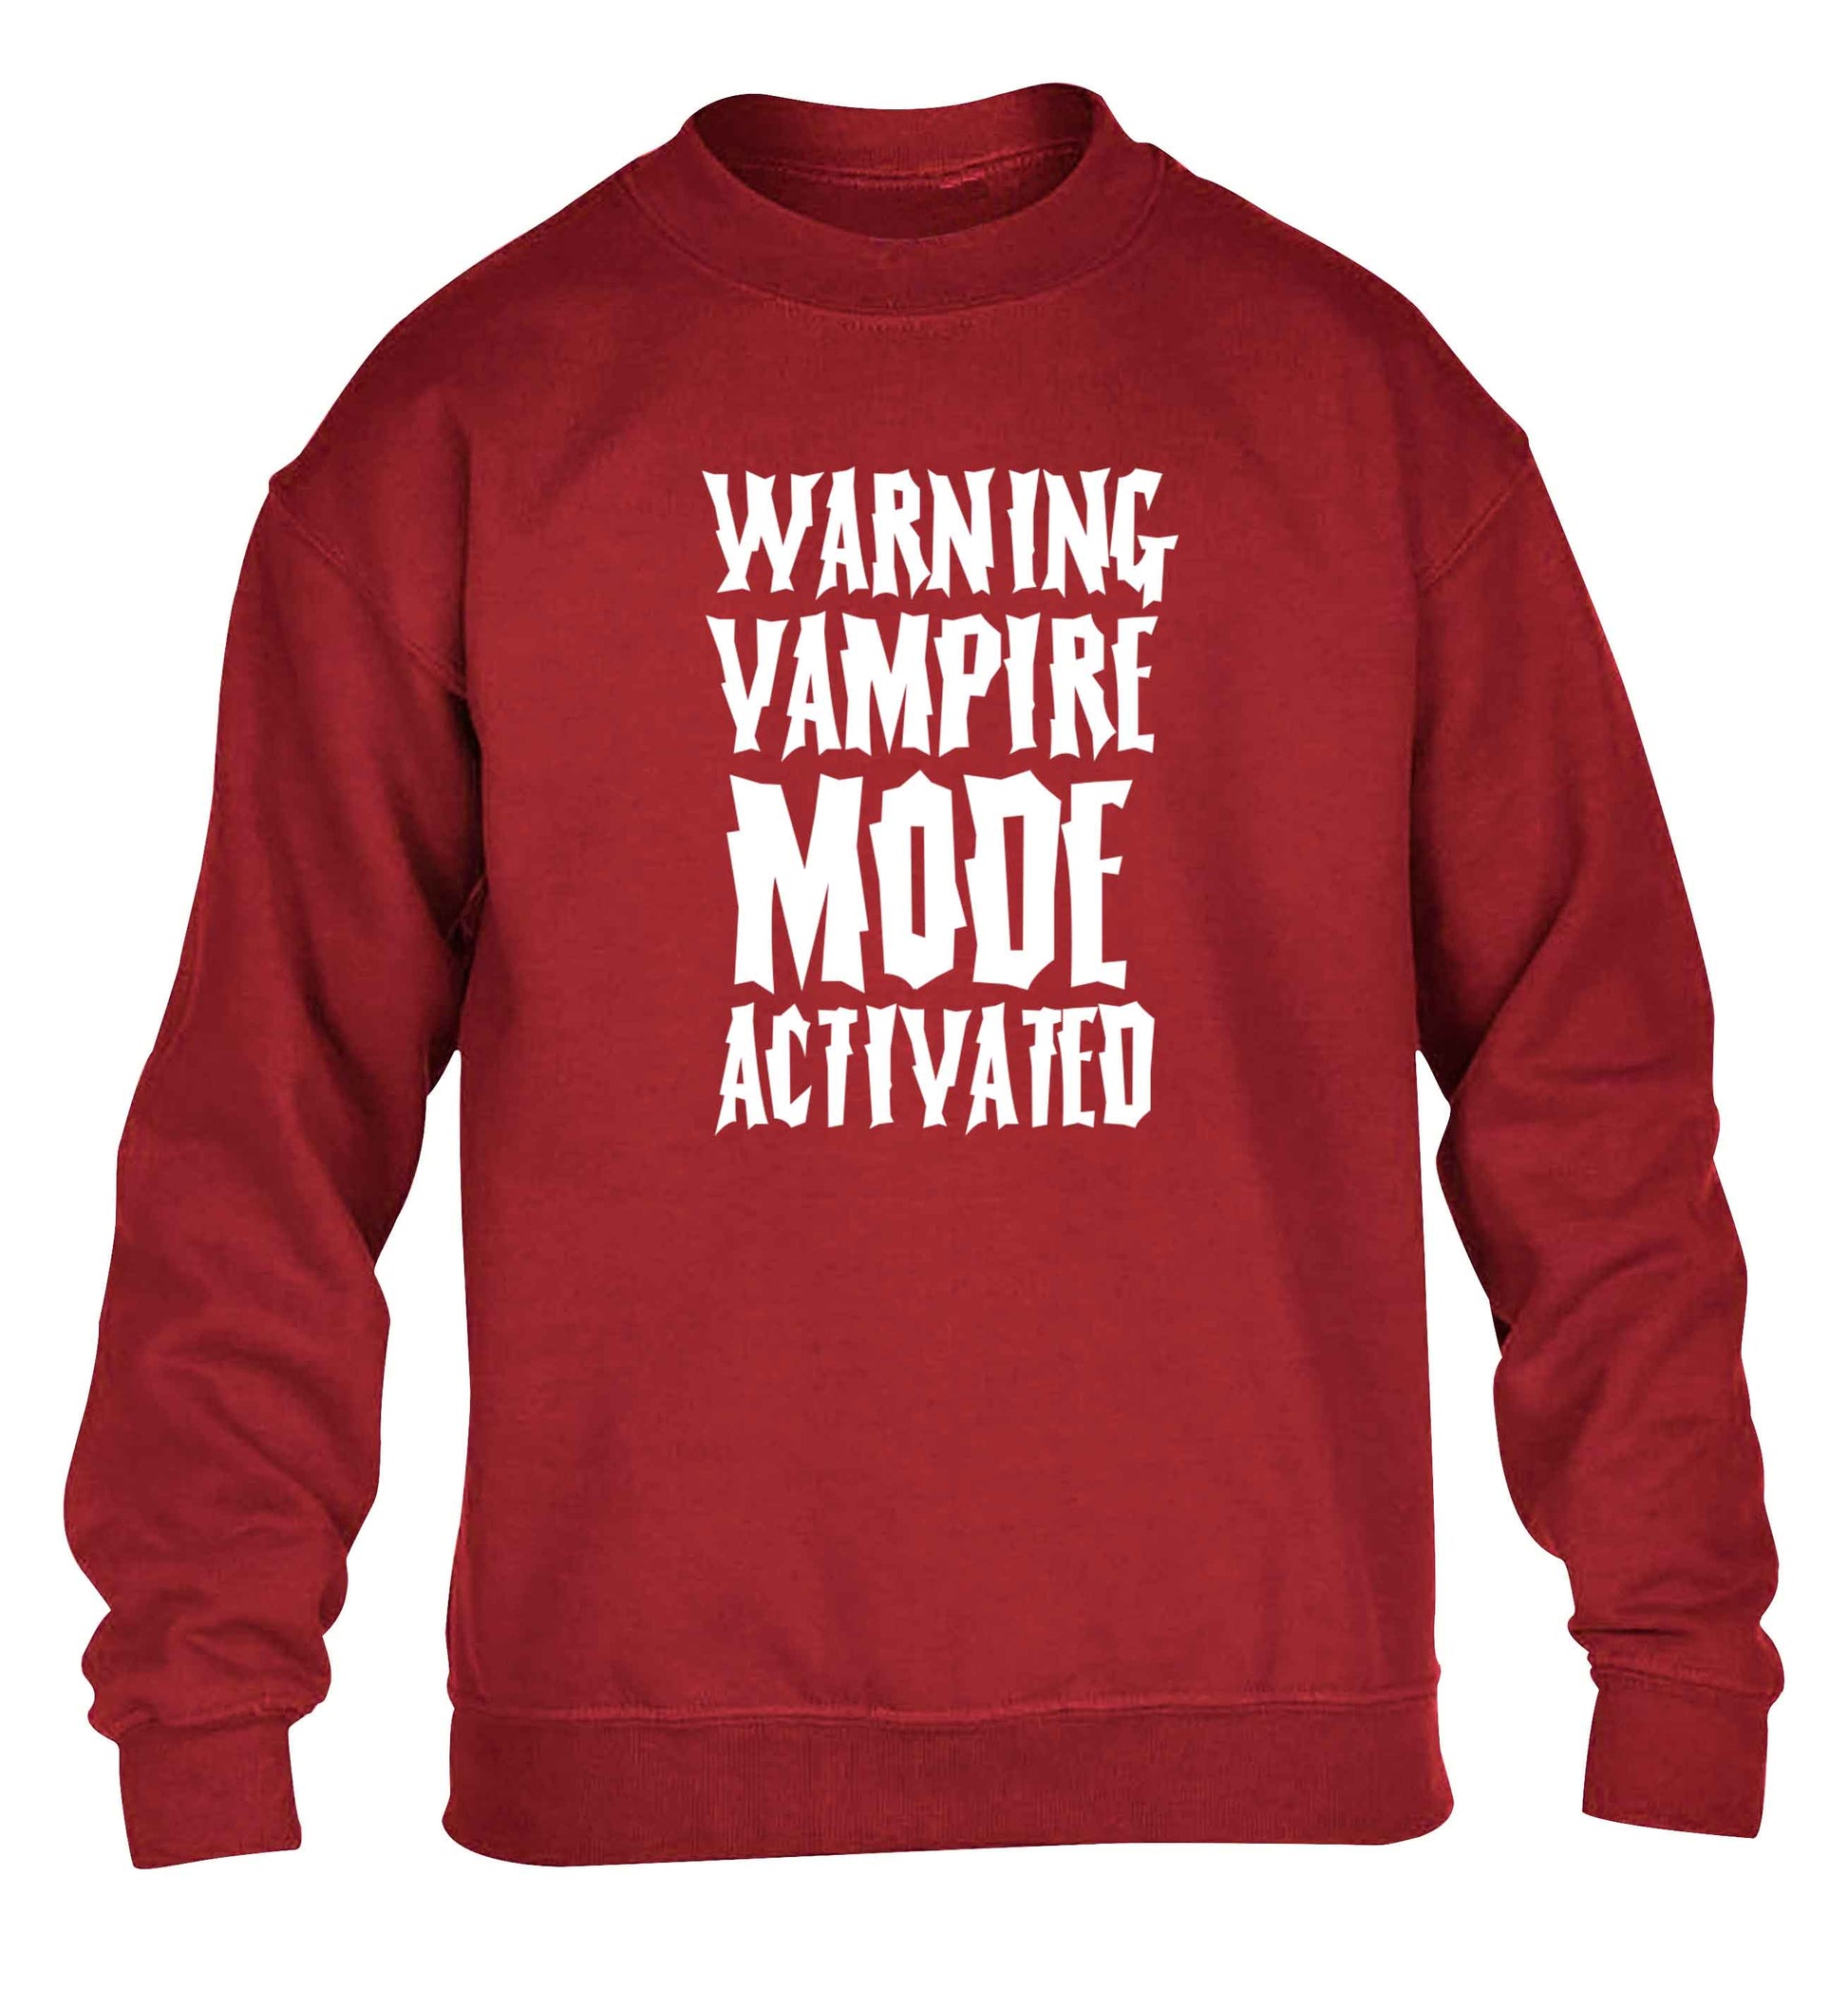 Warning vampire mode activated children's grey sweater 12-13 Years